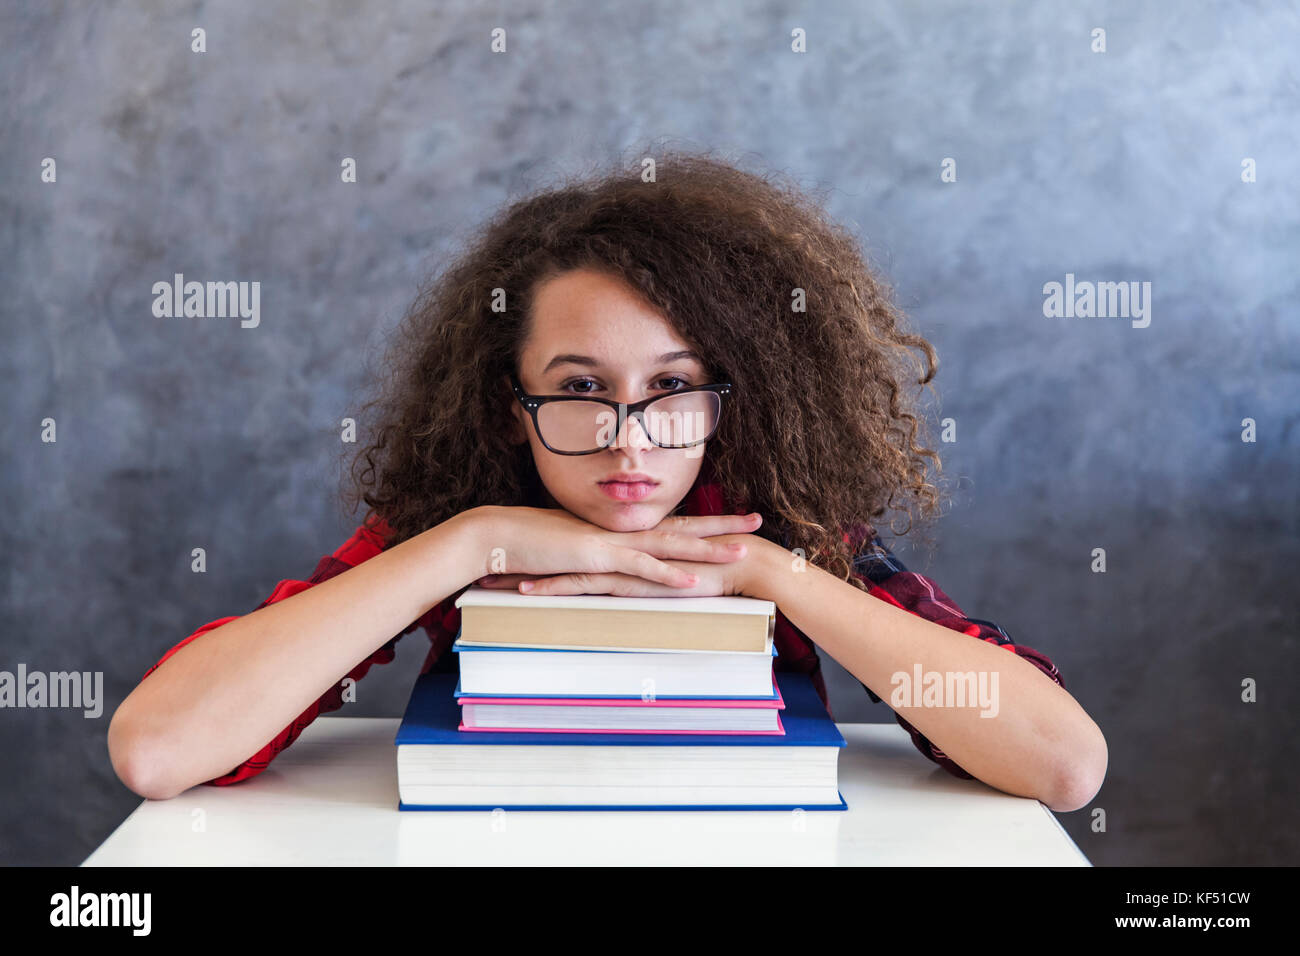 Ritratto di stanchi capelli ricci teen ragazza resto dall'apprendimento sui libri Foto Stock